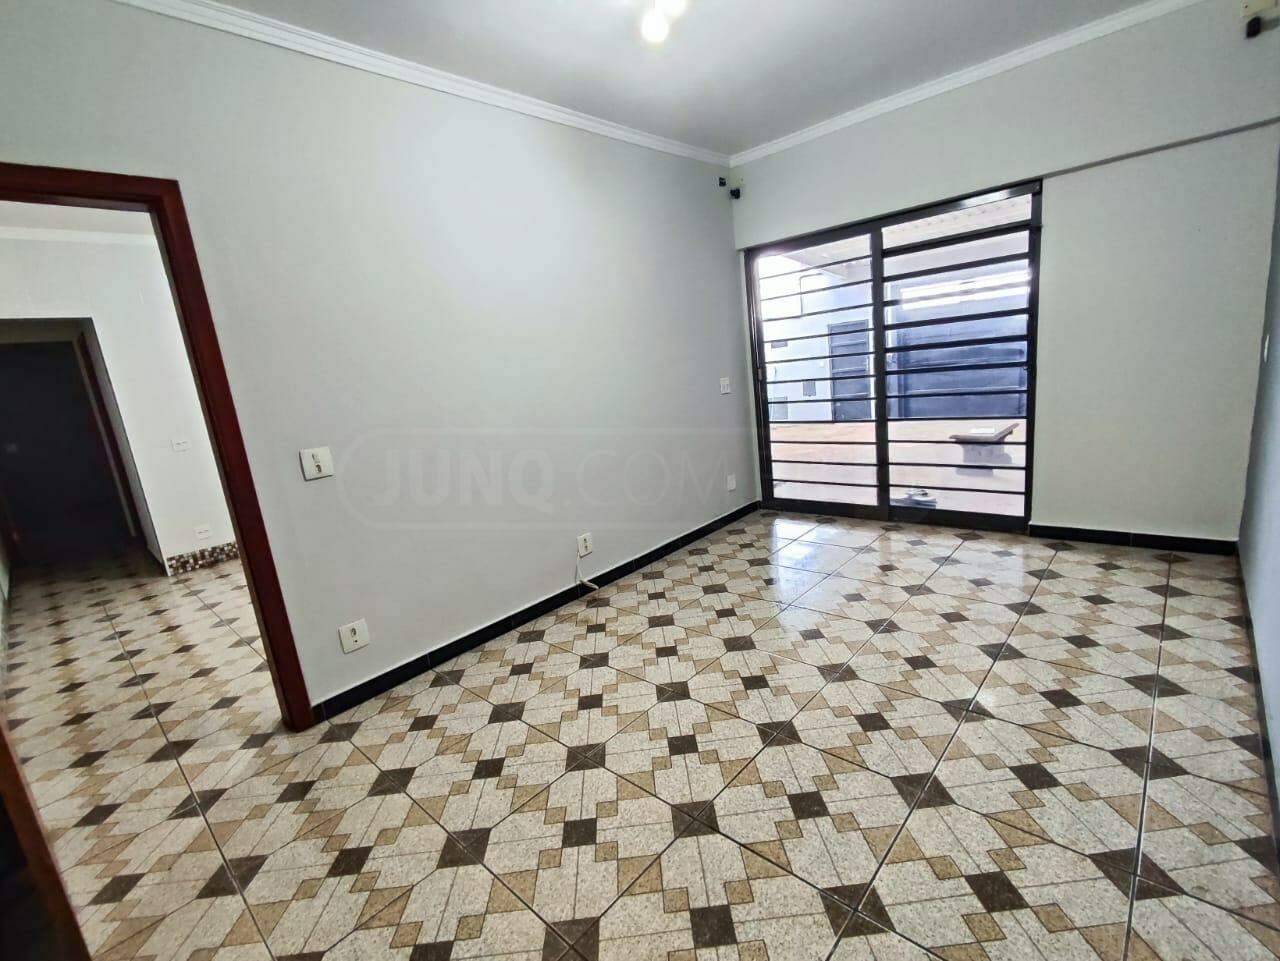 Casa à venda, 3 quartos, sendo 1 suíte, 4 vagas, no bairro Jardim São Carlos em Rio das Pedras - SP